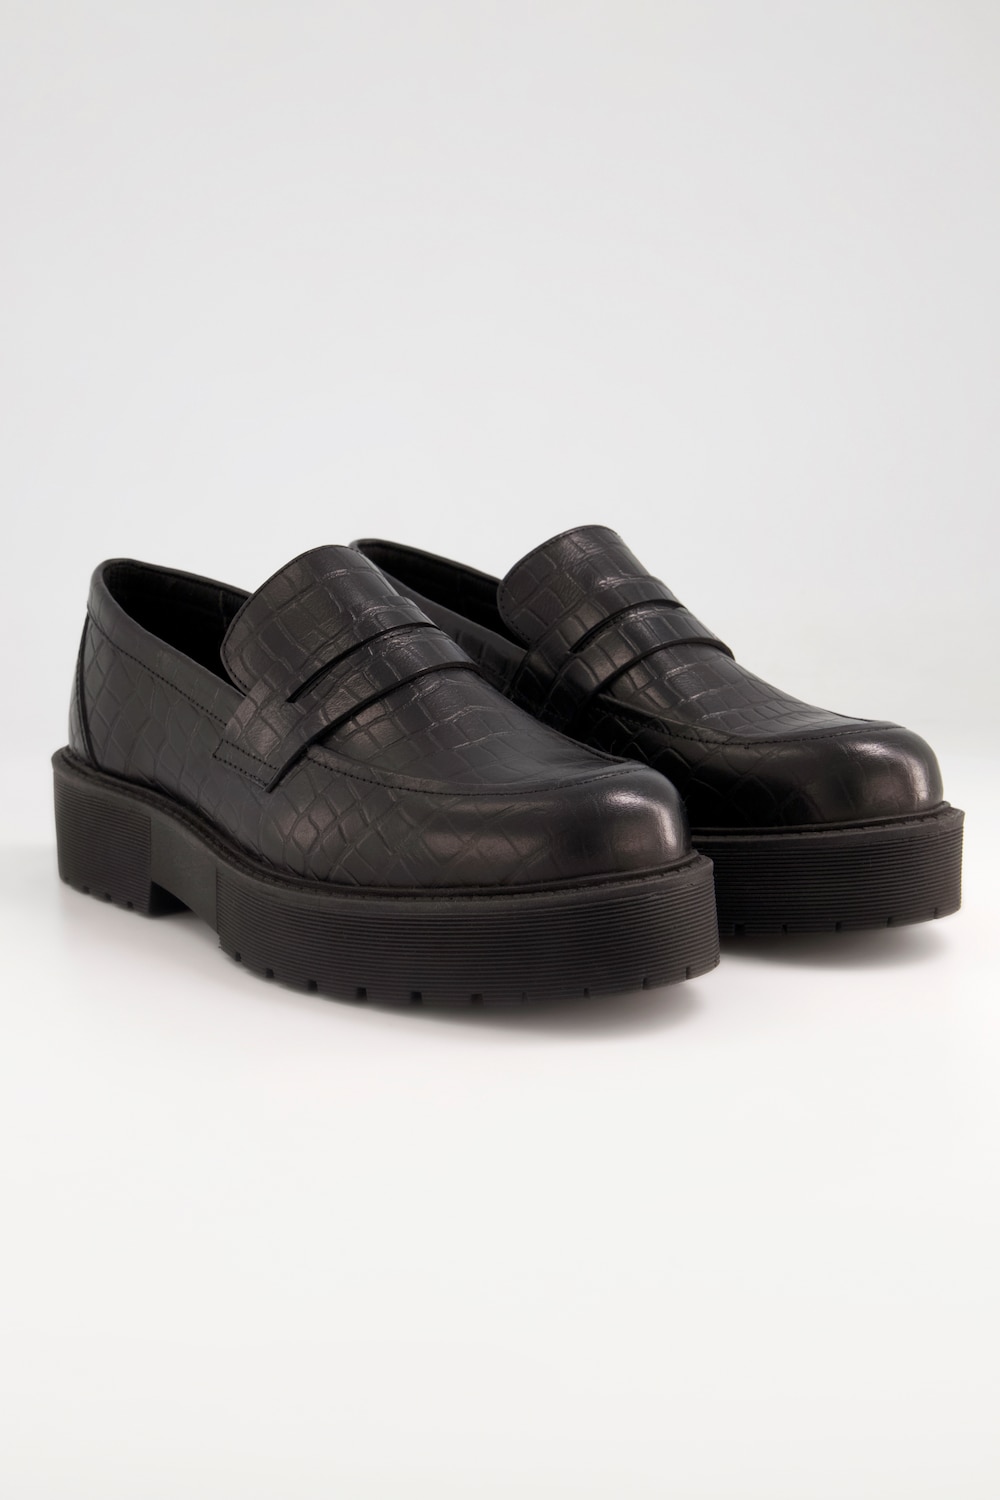 Grote Maten loafers, Dames, zwart, Maat: 40, Leer/Synthetische vezels, Studio Untold